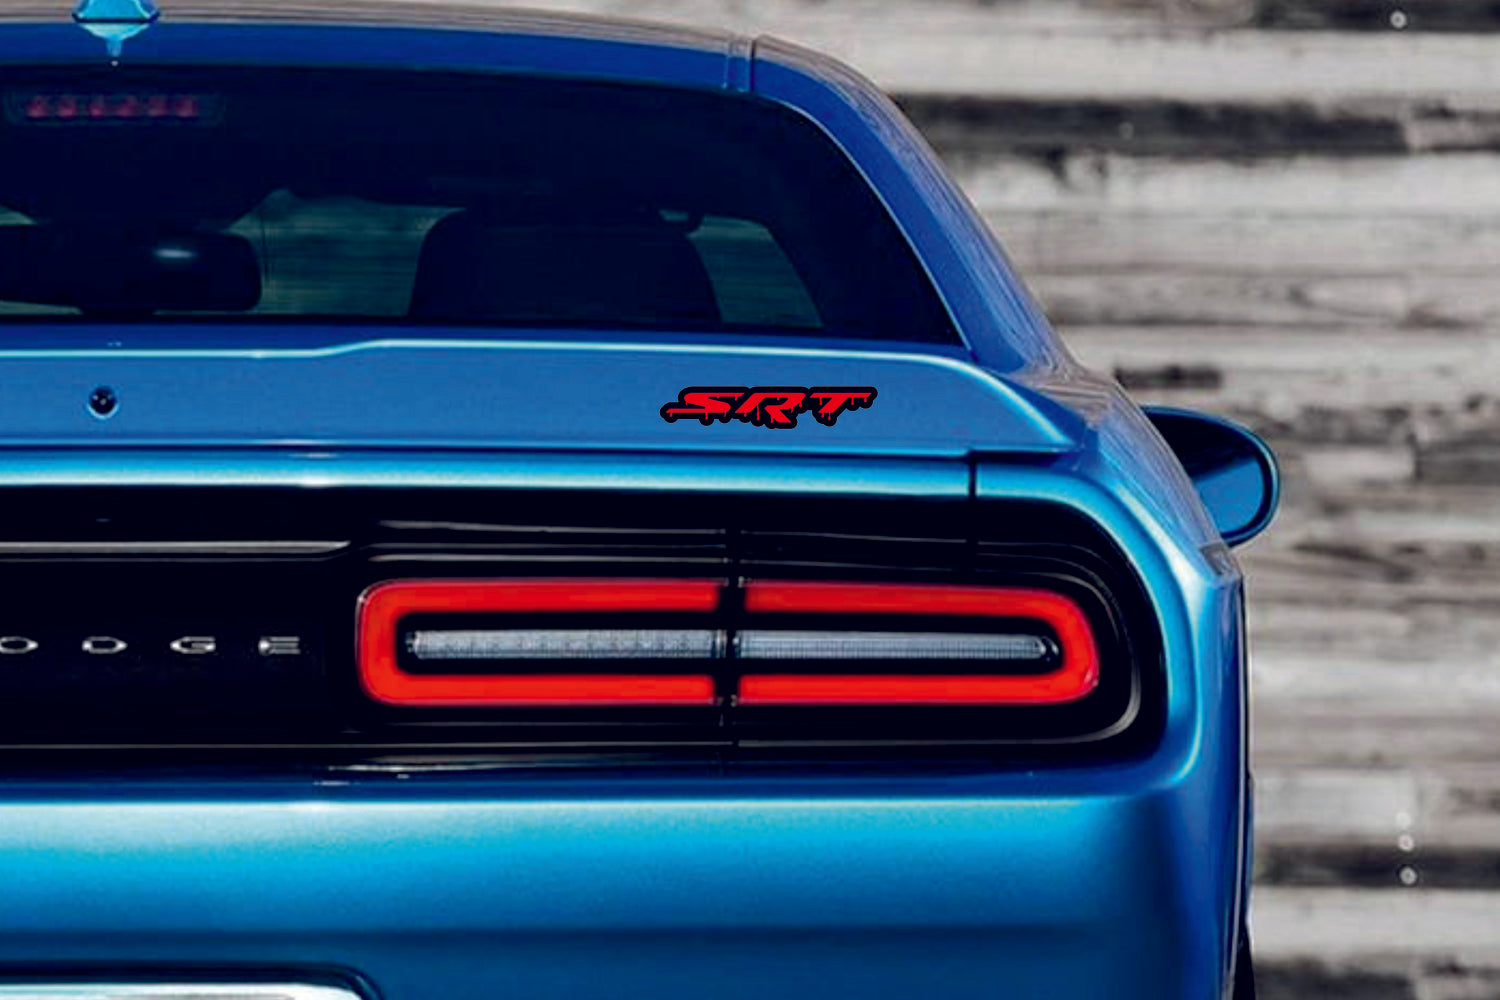 Dodge-Heckklappen-Emblem hinten mit SRT BLOOD-Logo